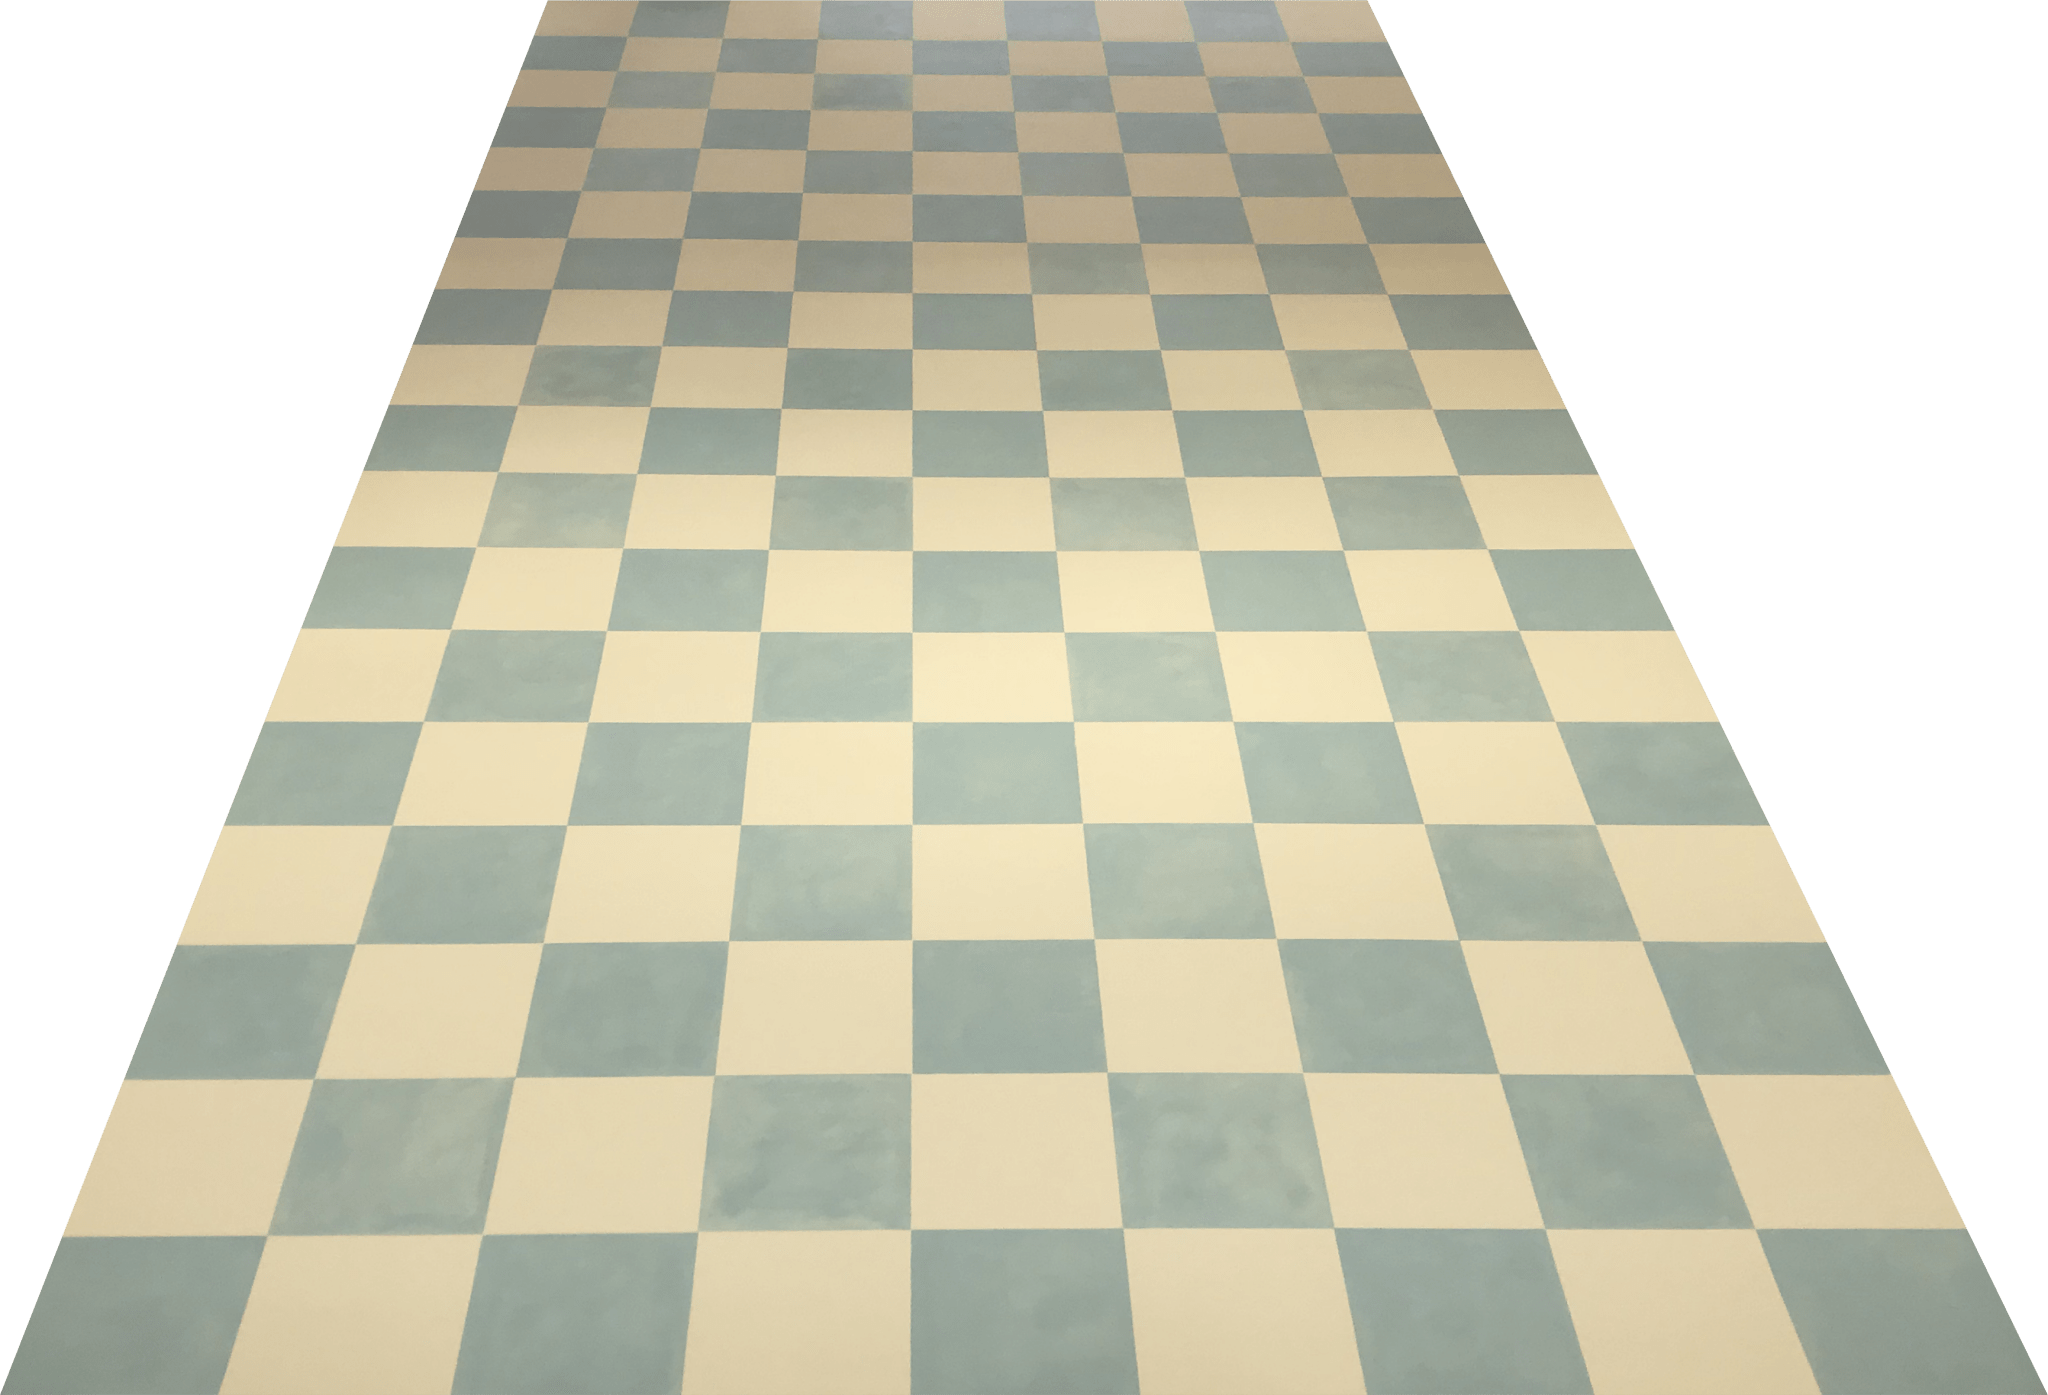 Checkerboard Floorcloth #2